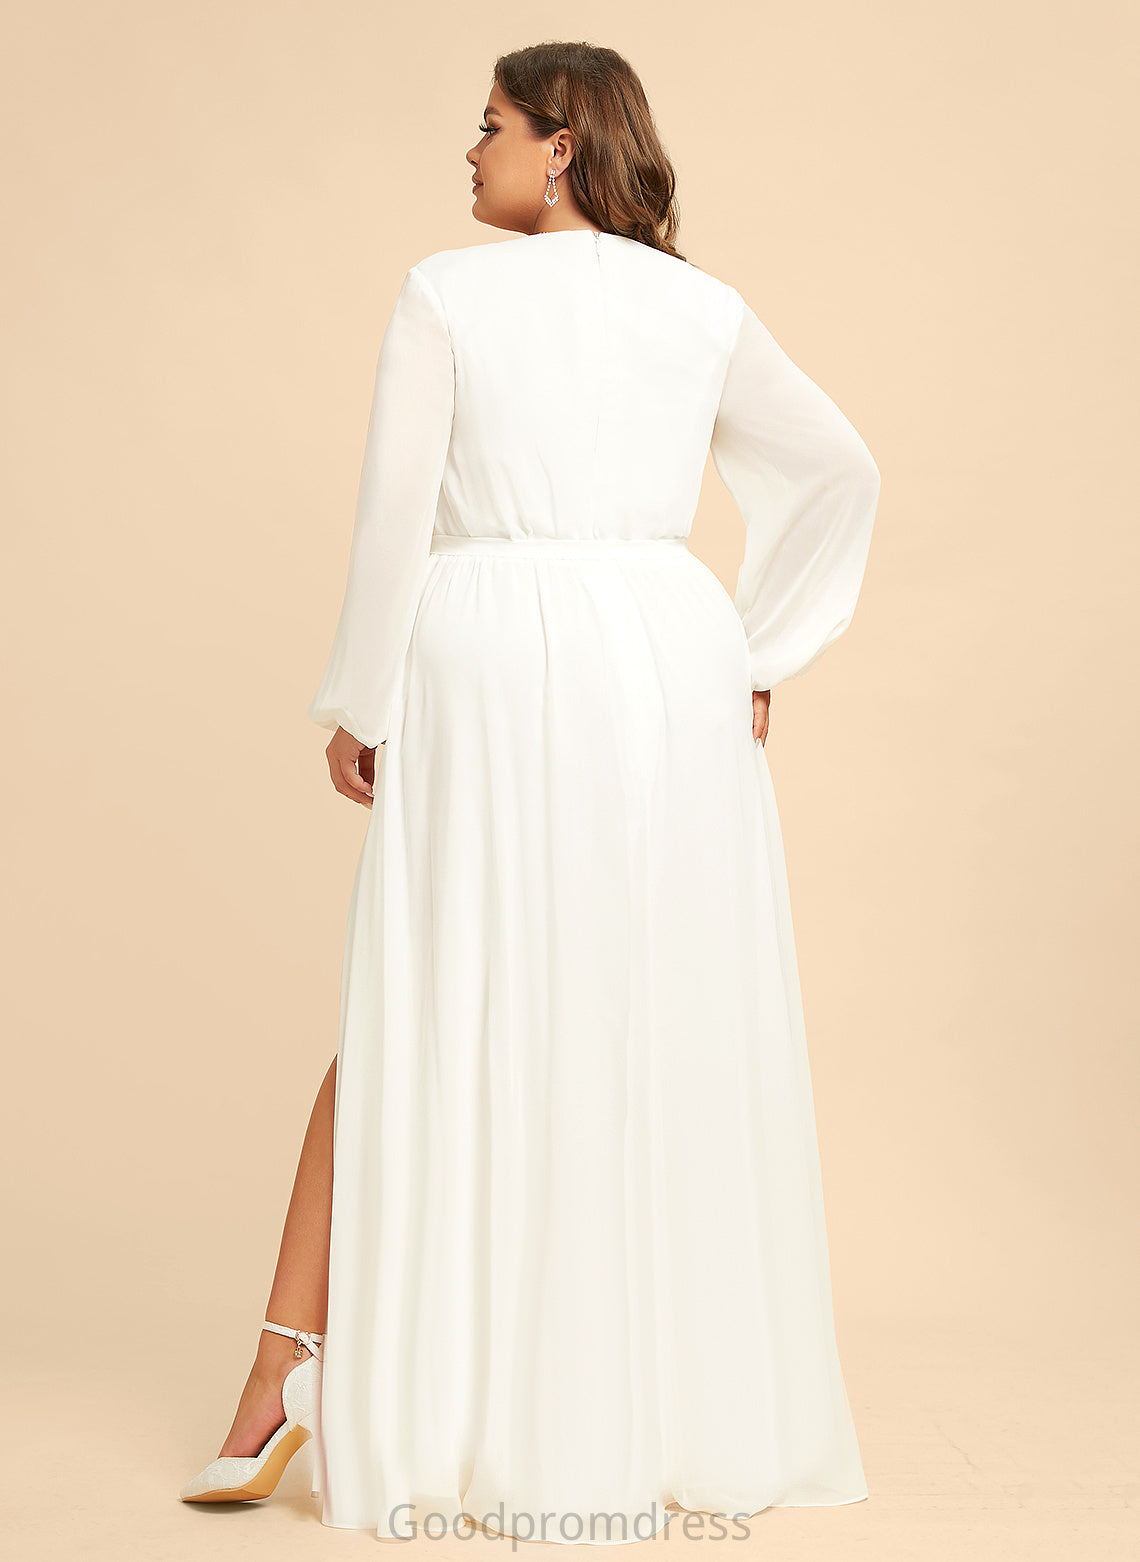 Dress Wedding Dresses A-Line Floor-Length Wedding V-neck Chiffon Alina